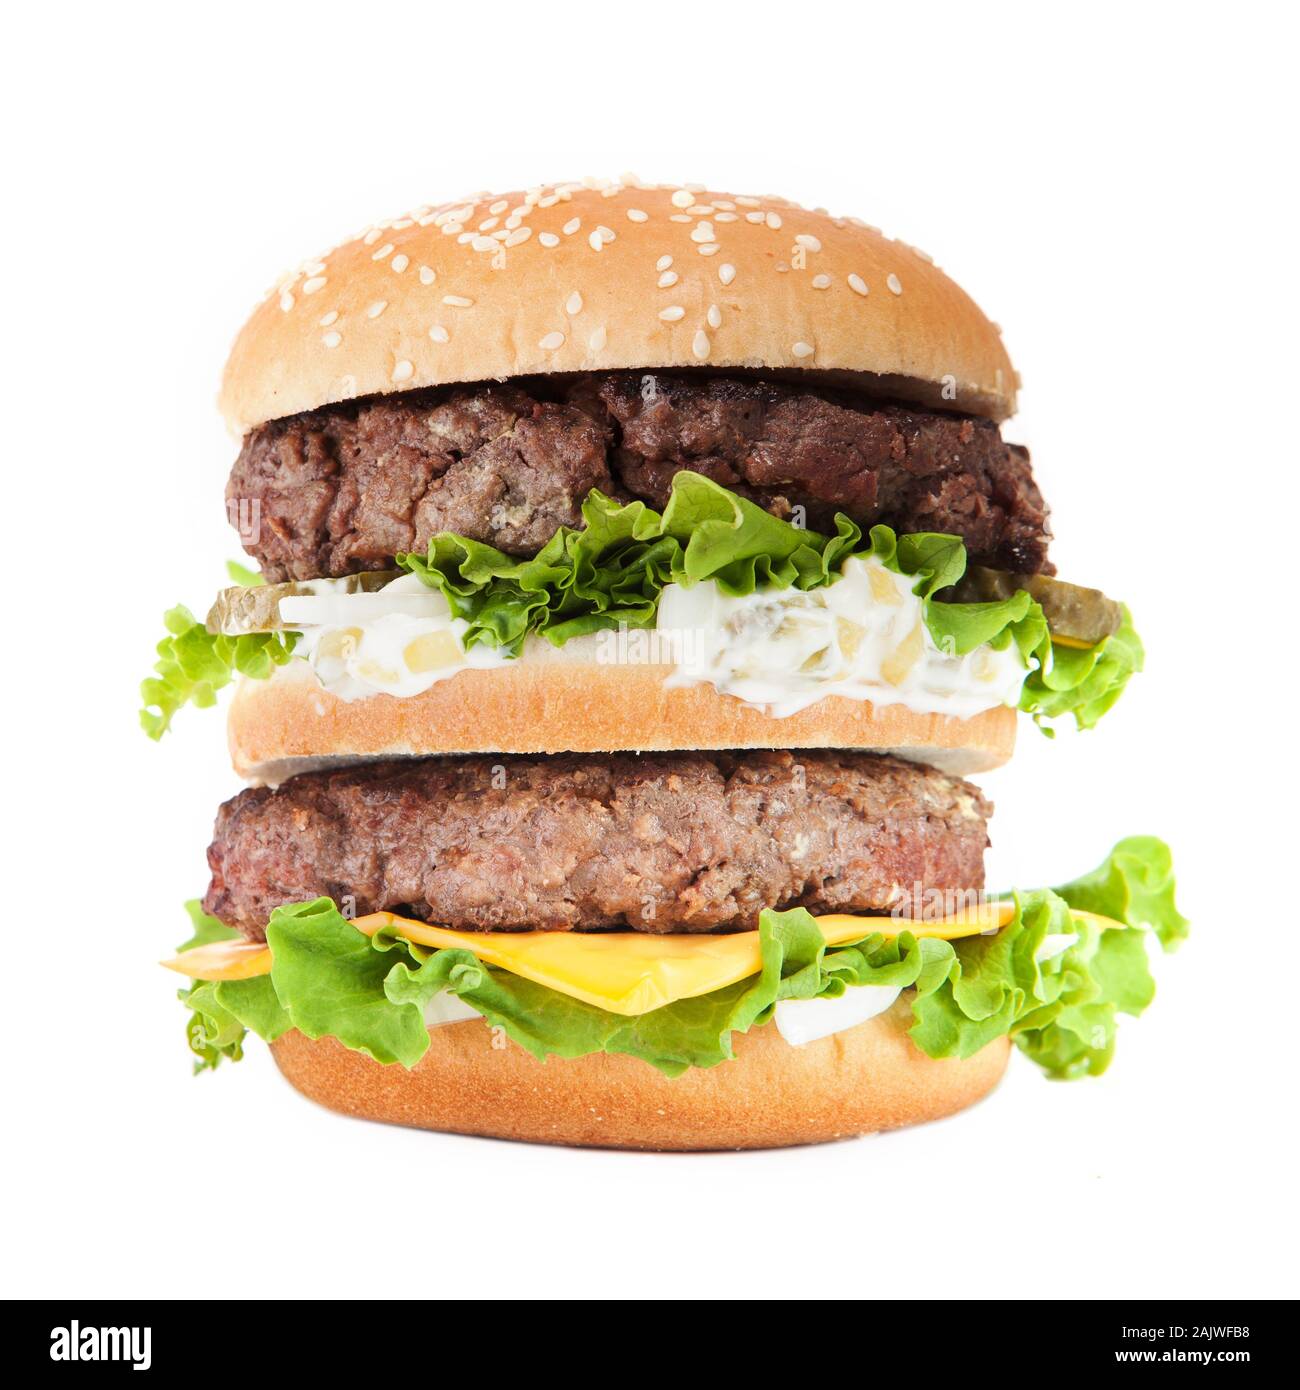 Big hamburger isolated on white background Stock Photo